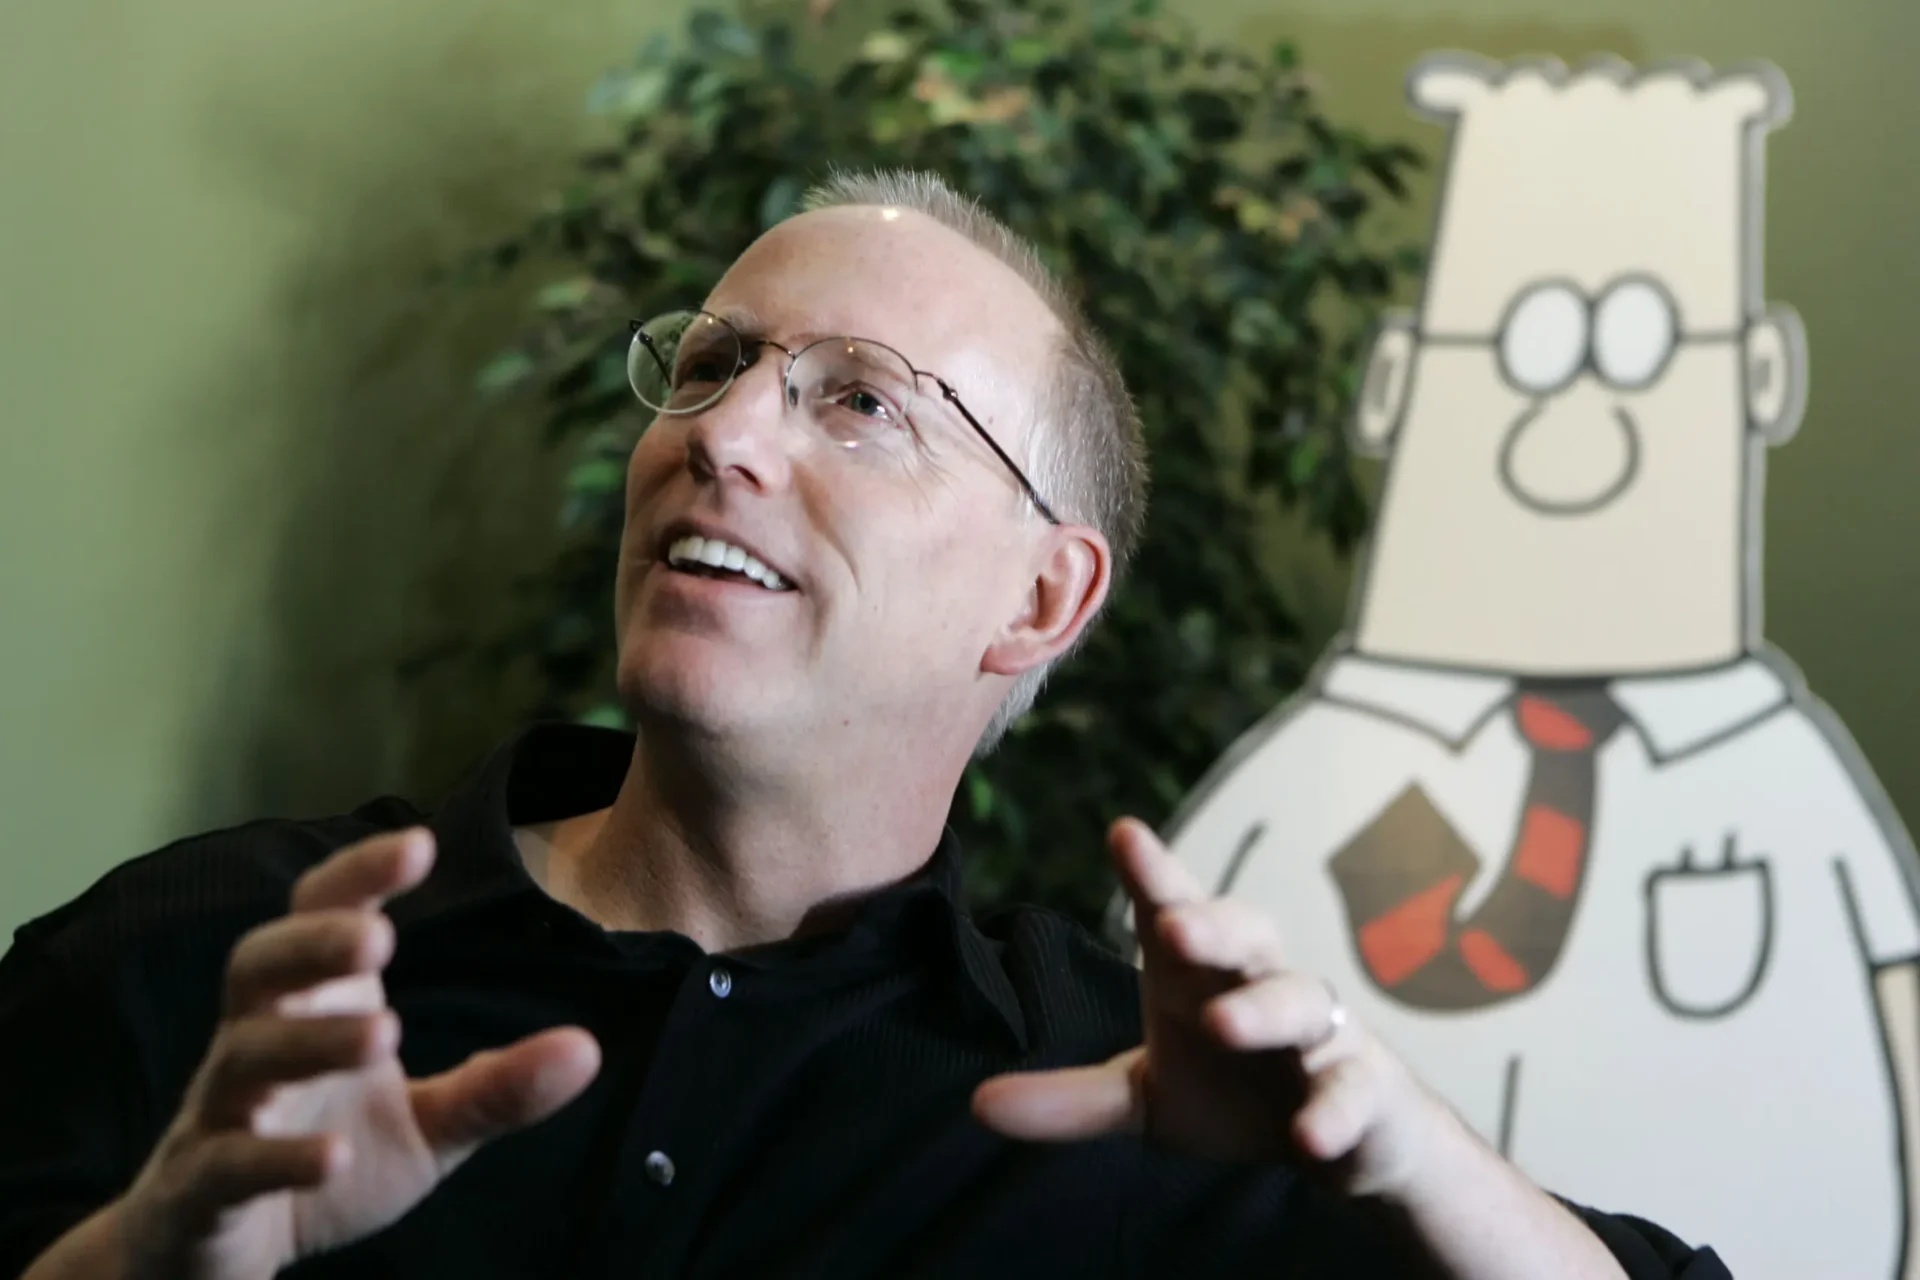 El distribuidor de Dilbert corta los lazos con el creador por comentarios sobre la carrera